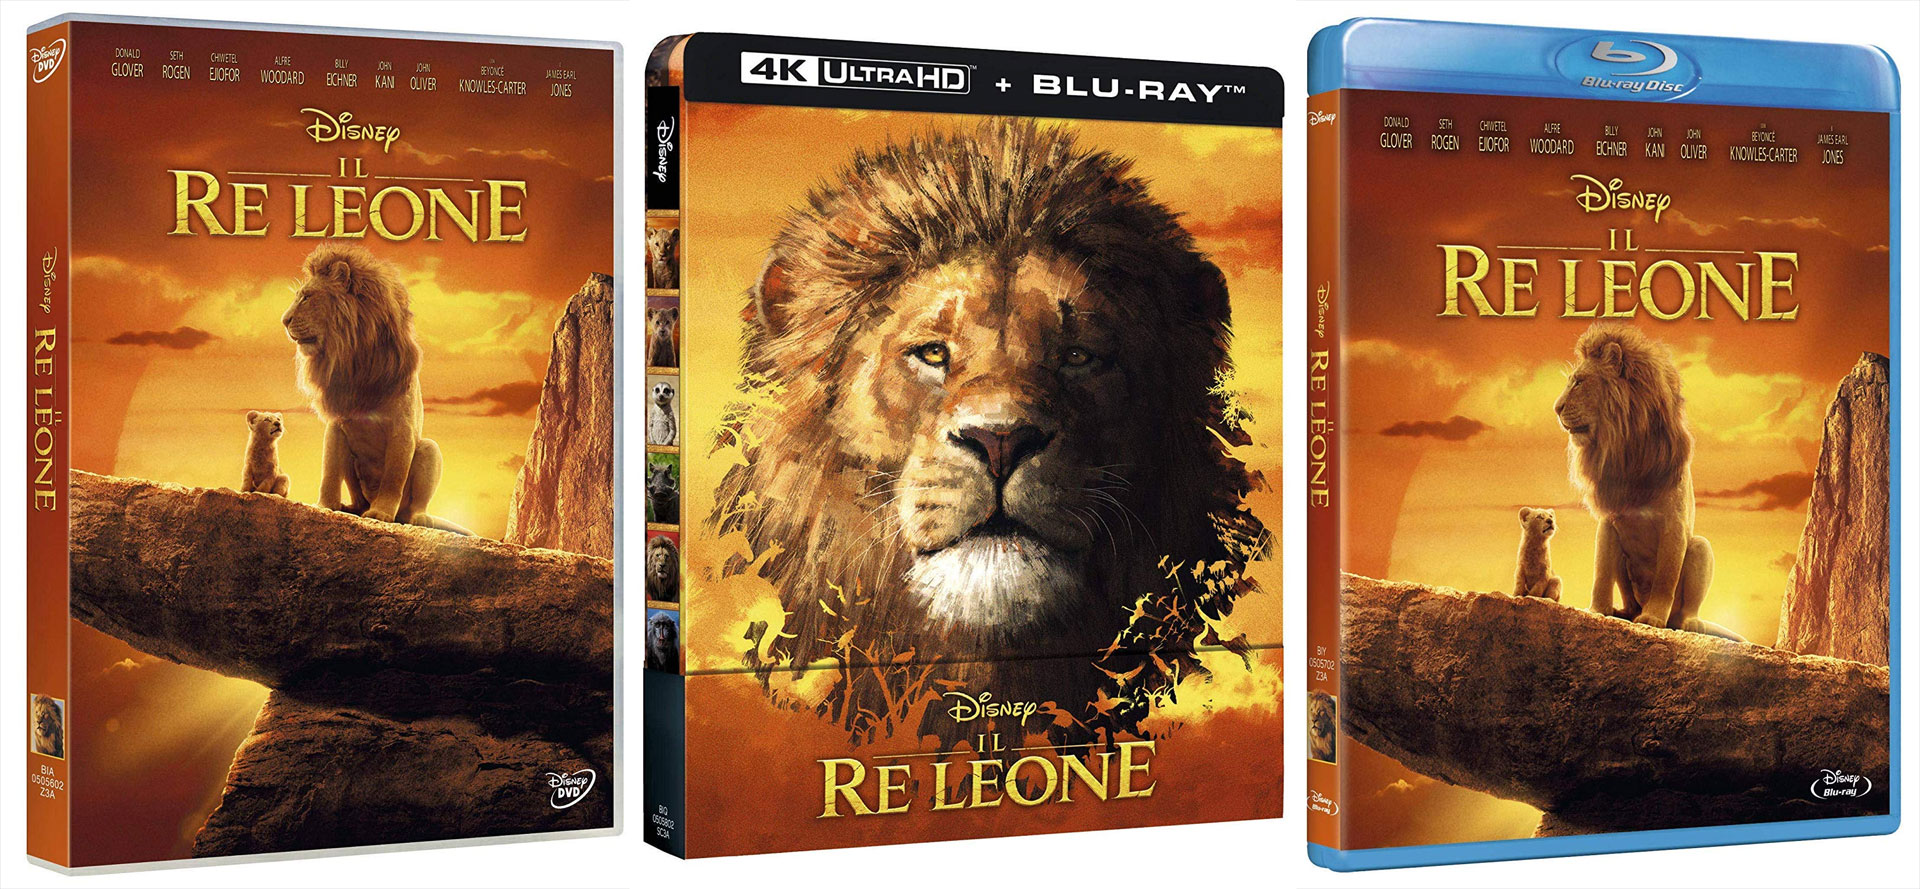 Il Re Leone (2019) in Digitale da oggi, in DVD, Blu-Ray e 4k dal 11 dicembre